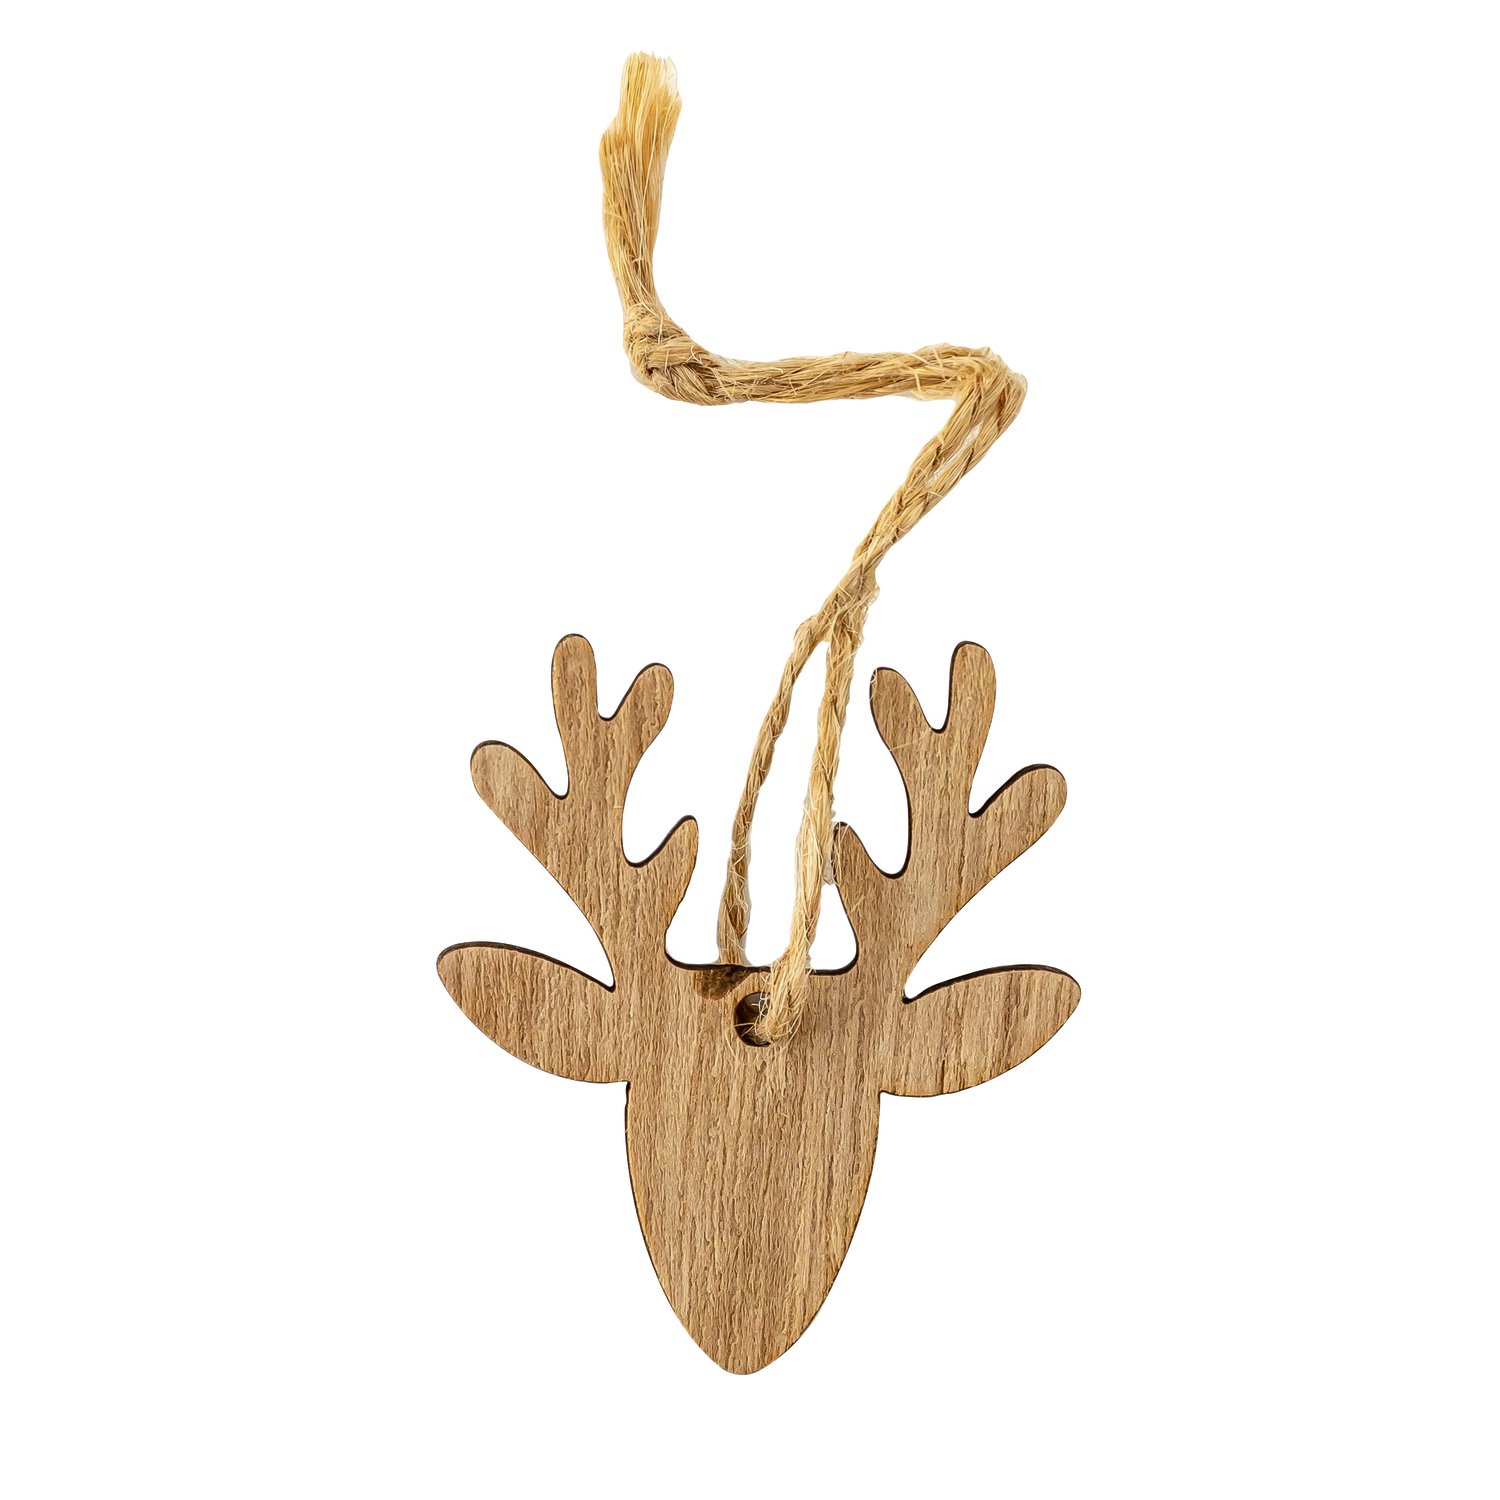 Wooden deer hanger with rope loop 5 x 4.3cm - 24pcs